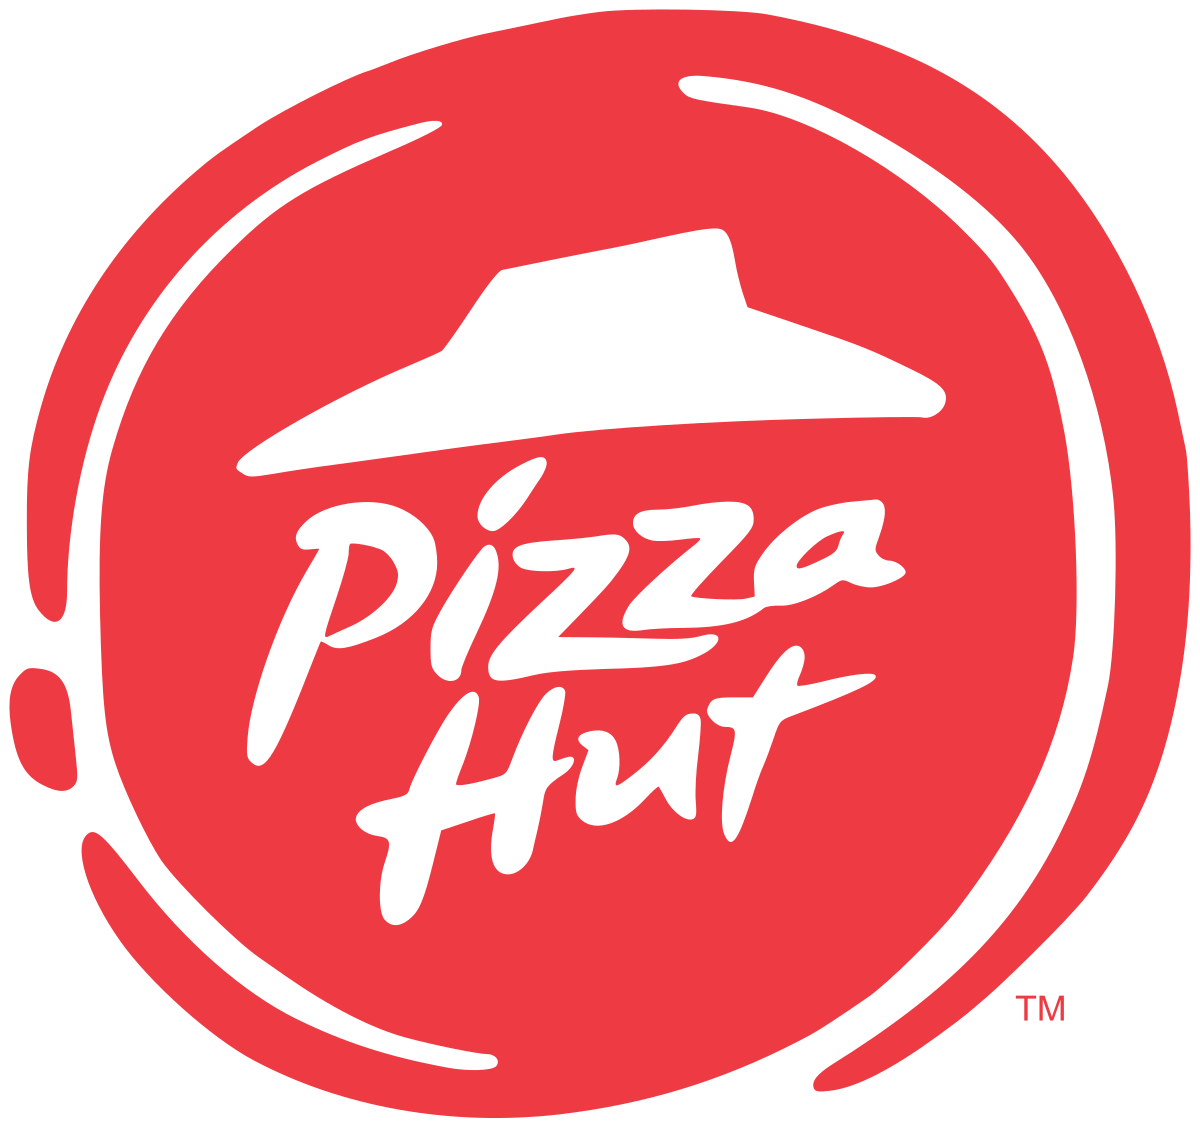 Pizza Hut Mission Statement